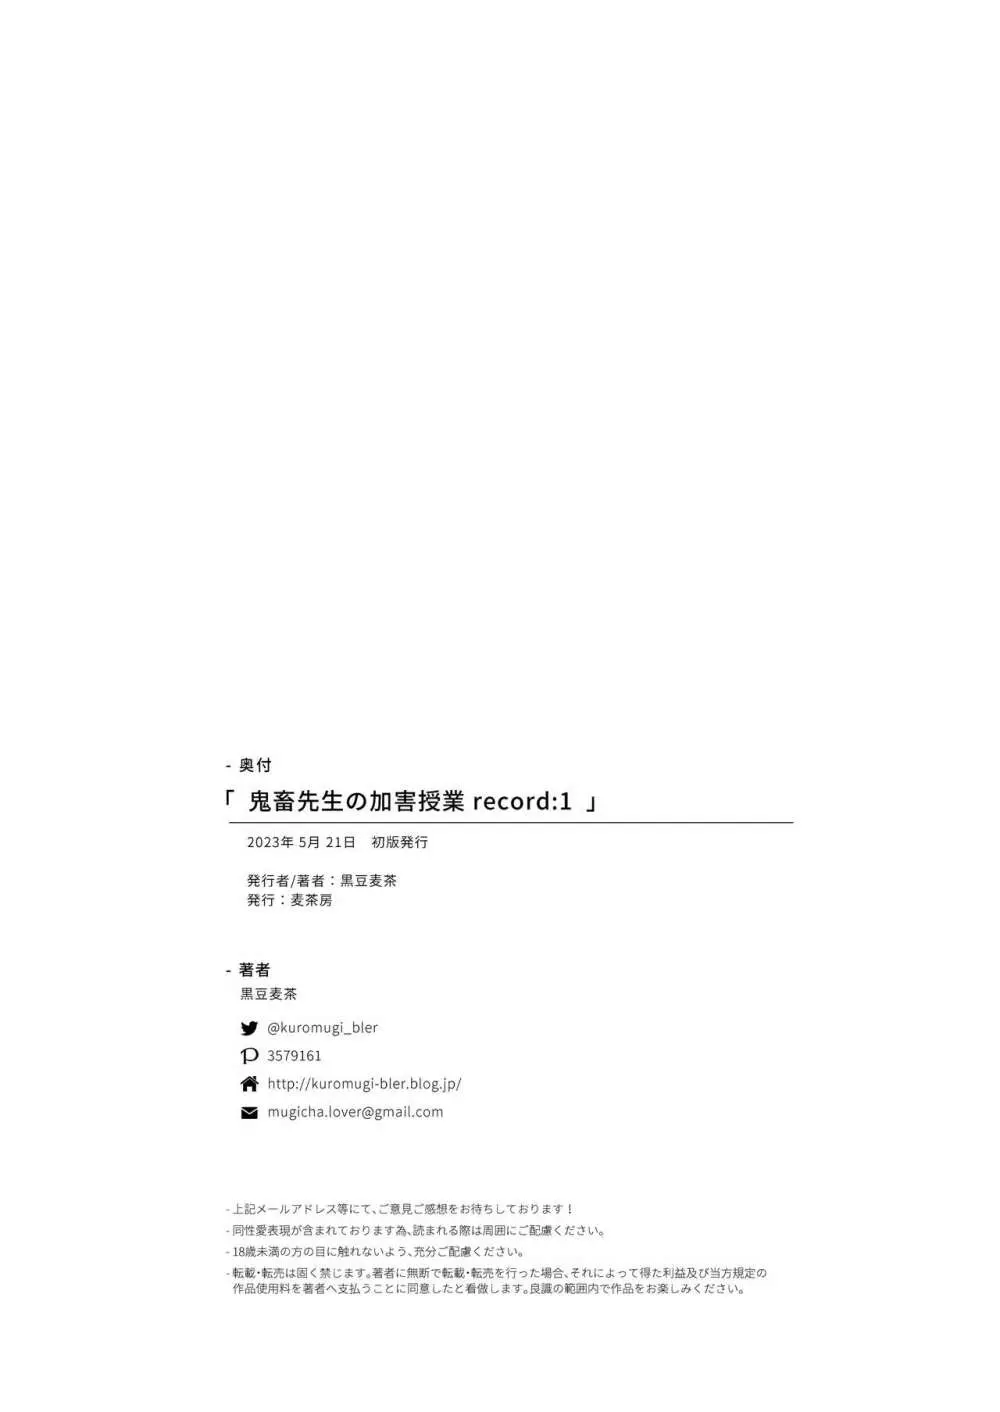 鬼畜先生の加害授業 record:1 33ページ